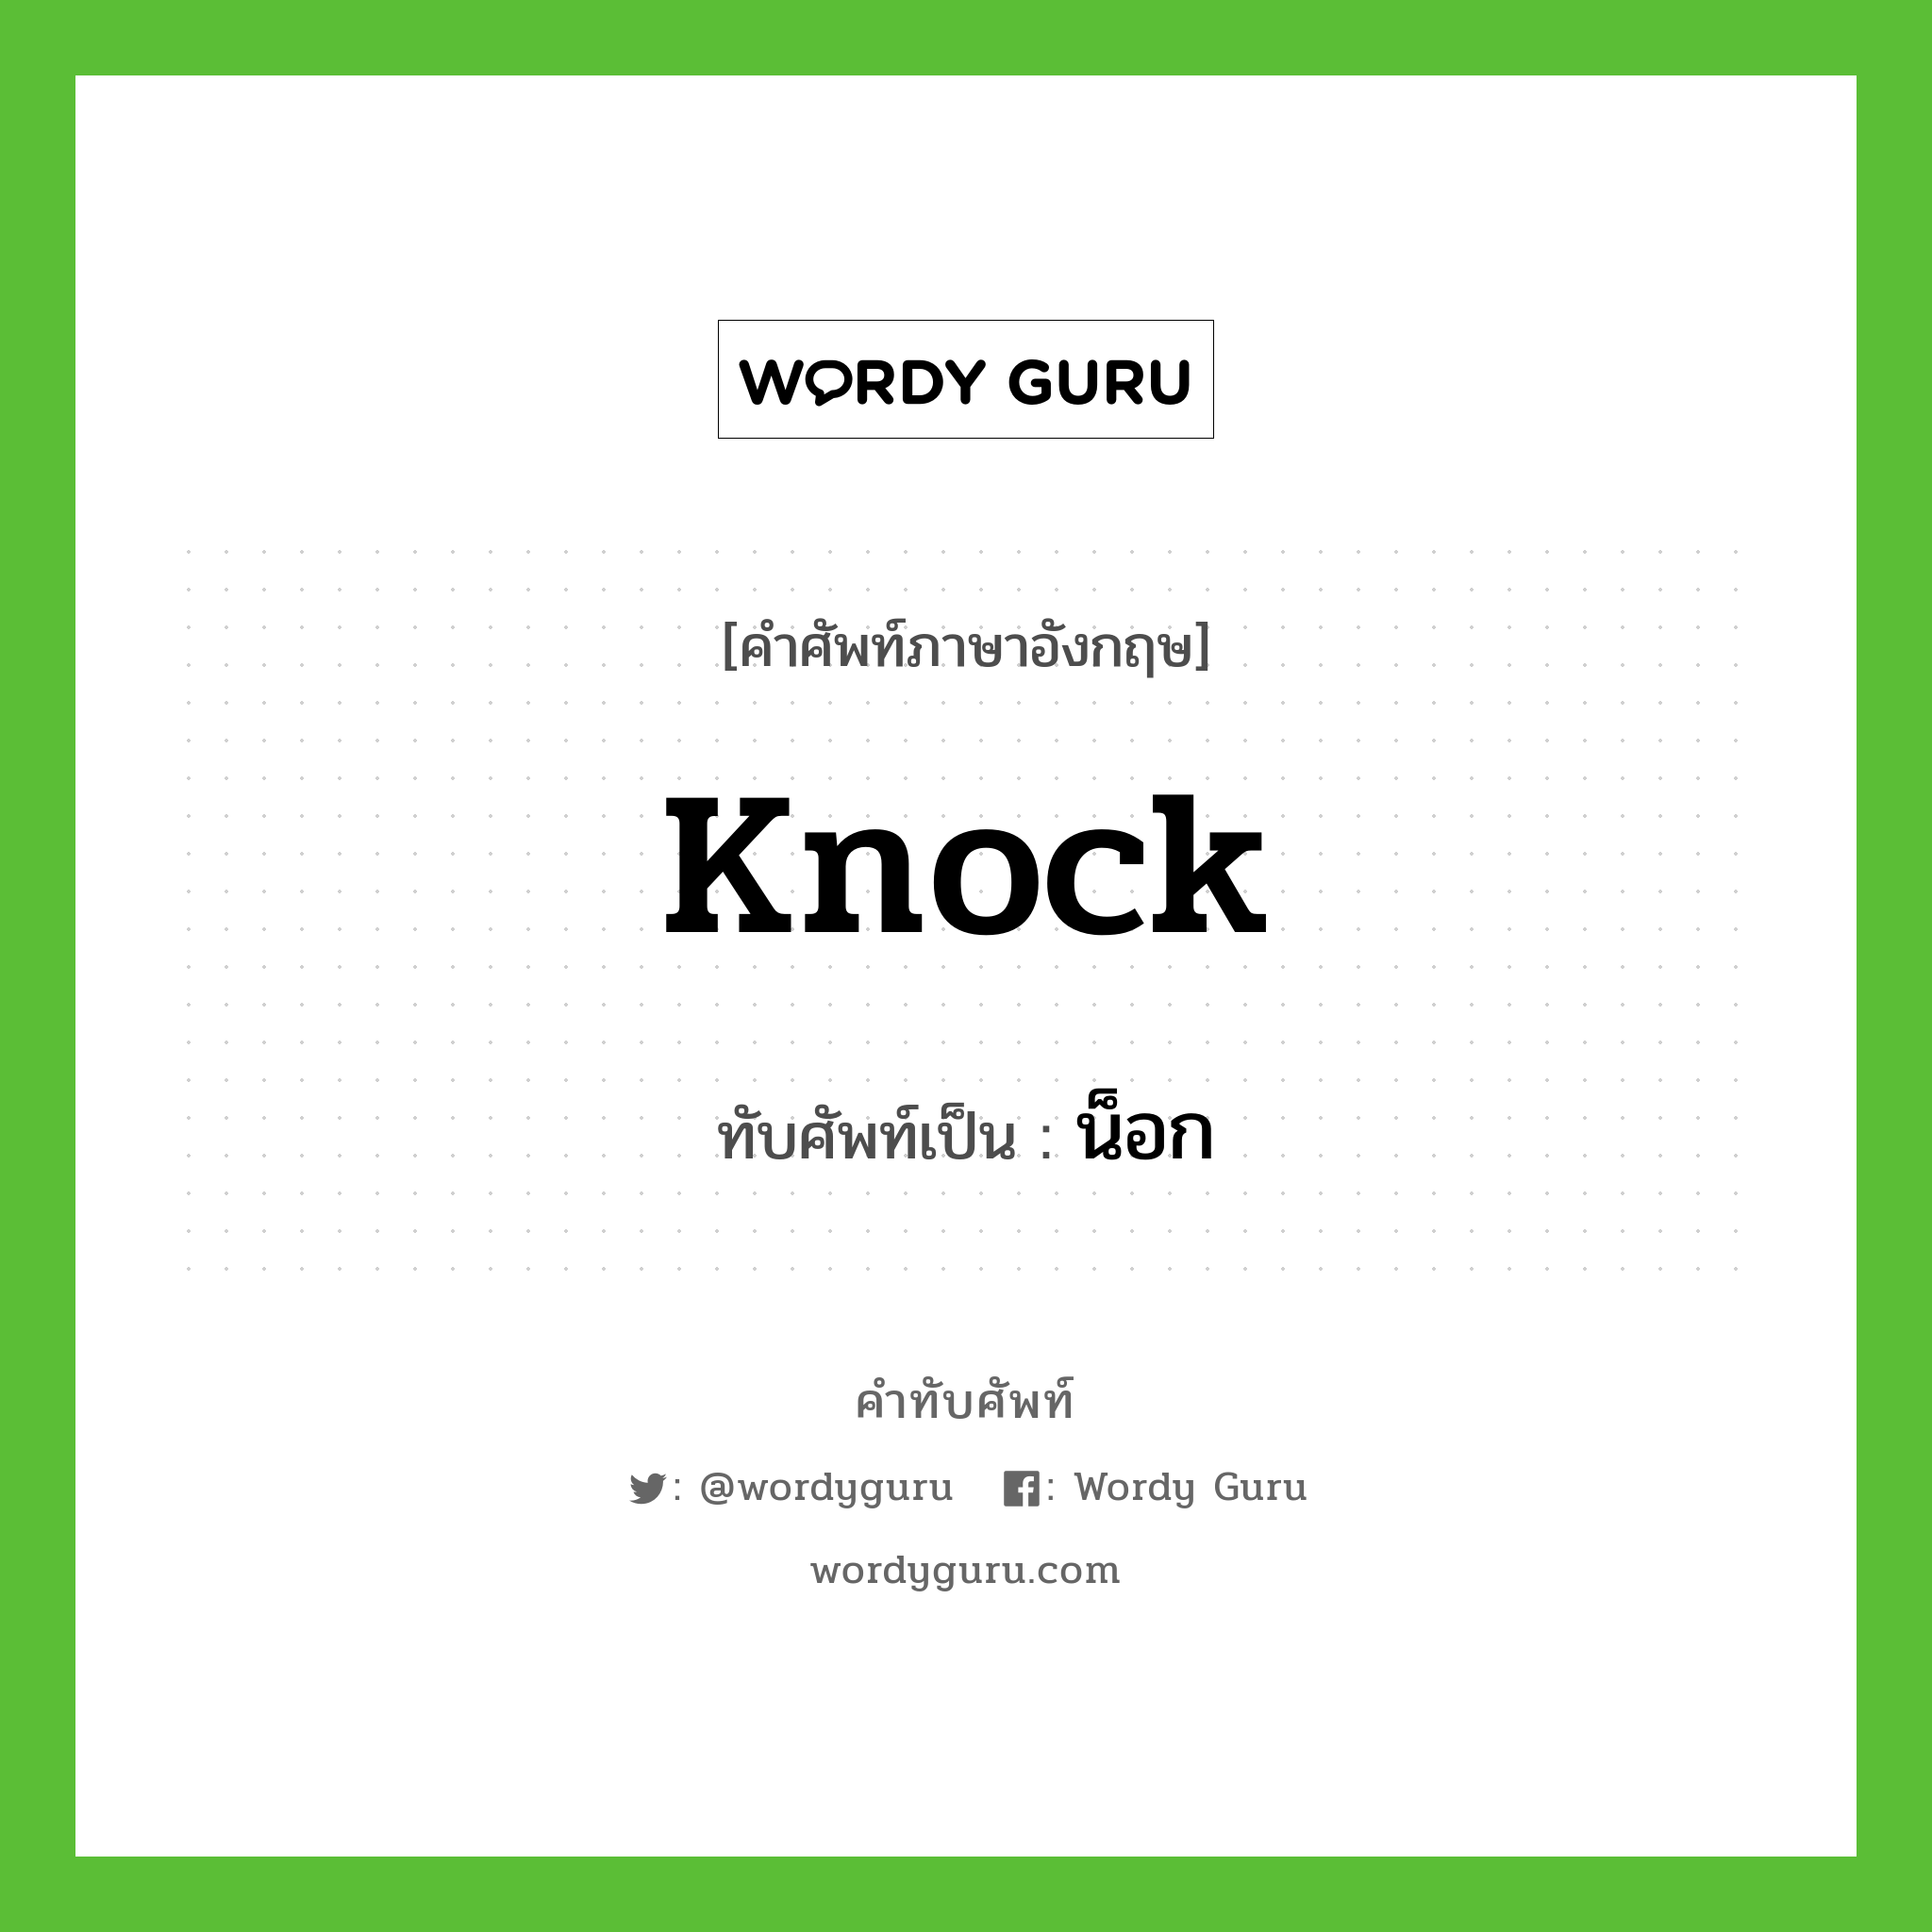 knock เขียนเป็นคำไทยว่าอะไร?, คำศัพท์ภาษาอังกฤษ knock ทับศัพท์เป็น น็อก